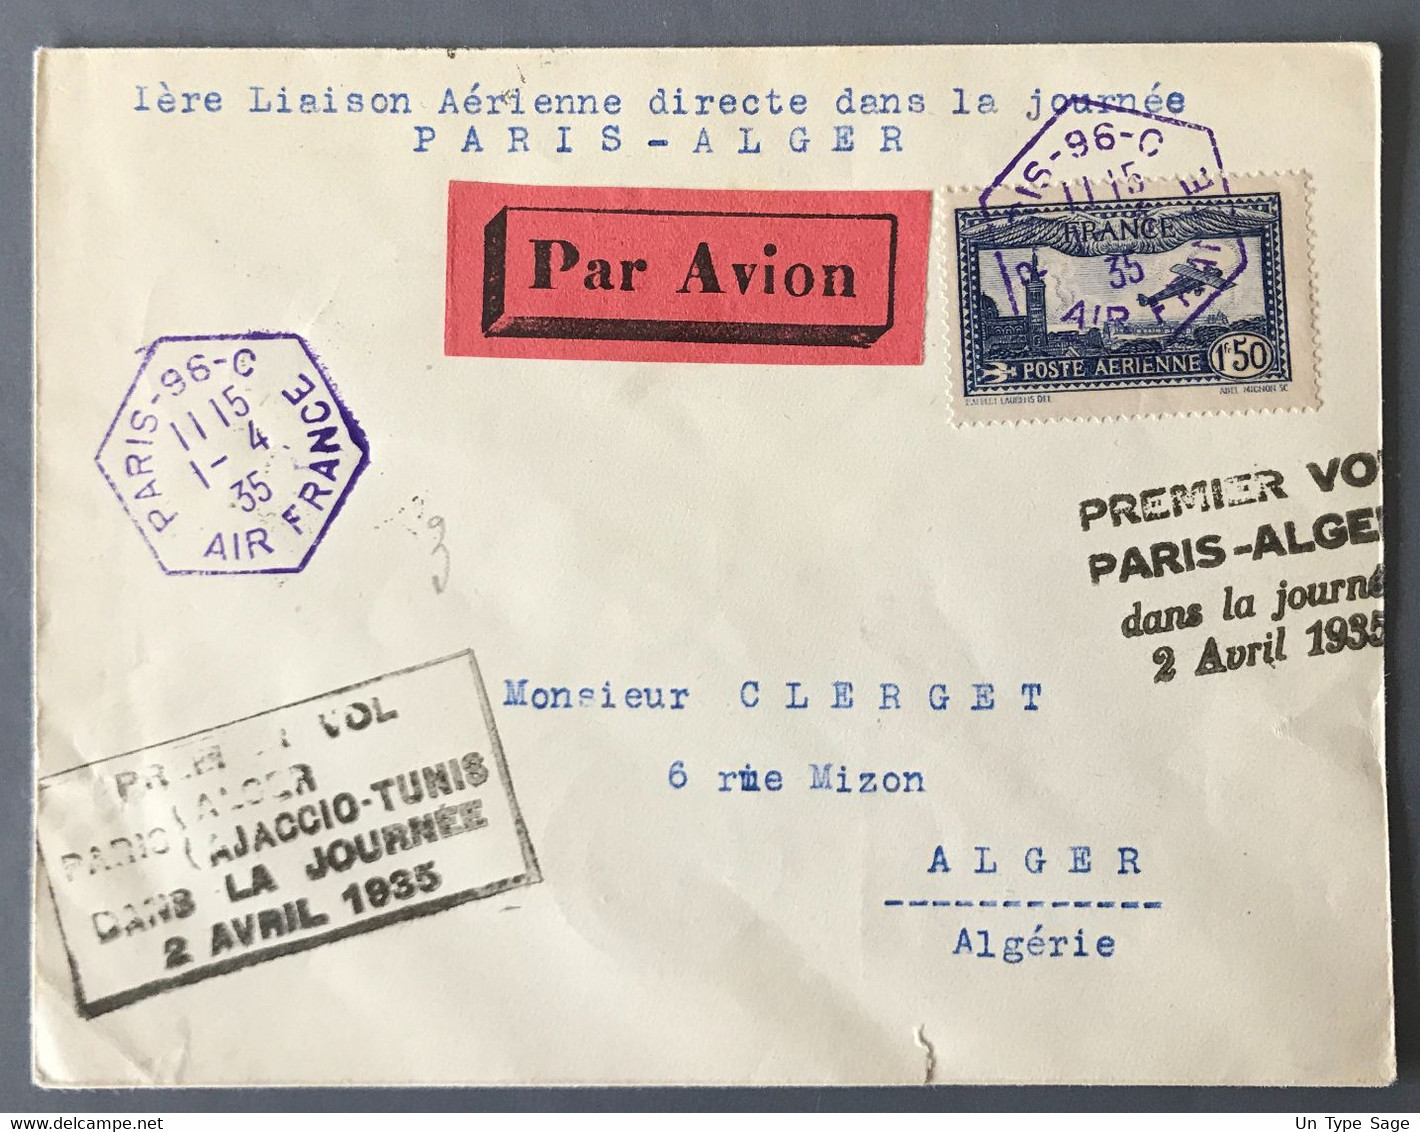 France PA N°6 Sur Enveloppe De Paris 1.4.1935 - Premier Vol Paris-Alger Dans La Journée 2 Avril 1935 - (W1115) - 1960-.... Briefe & Dokumente